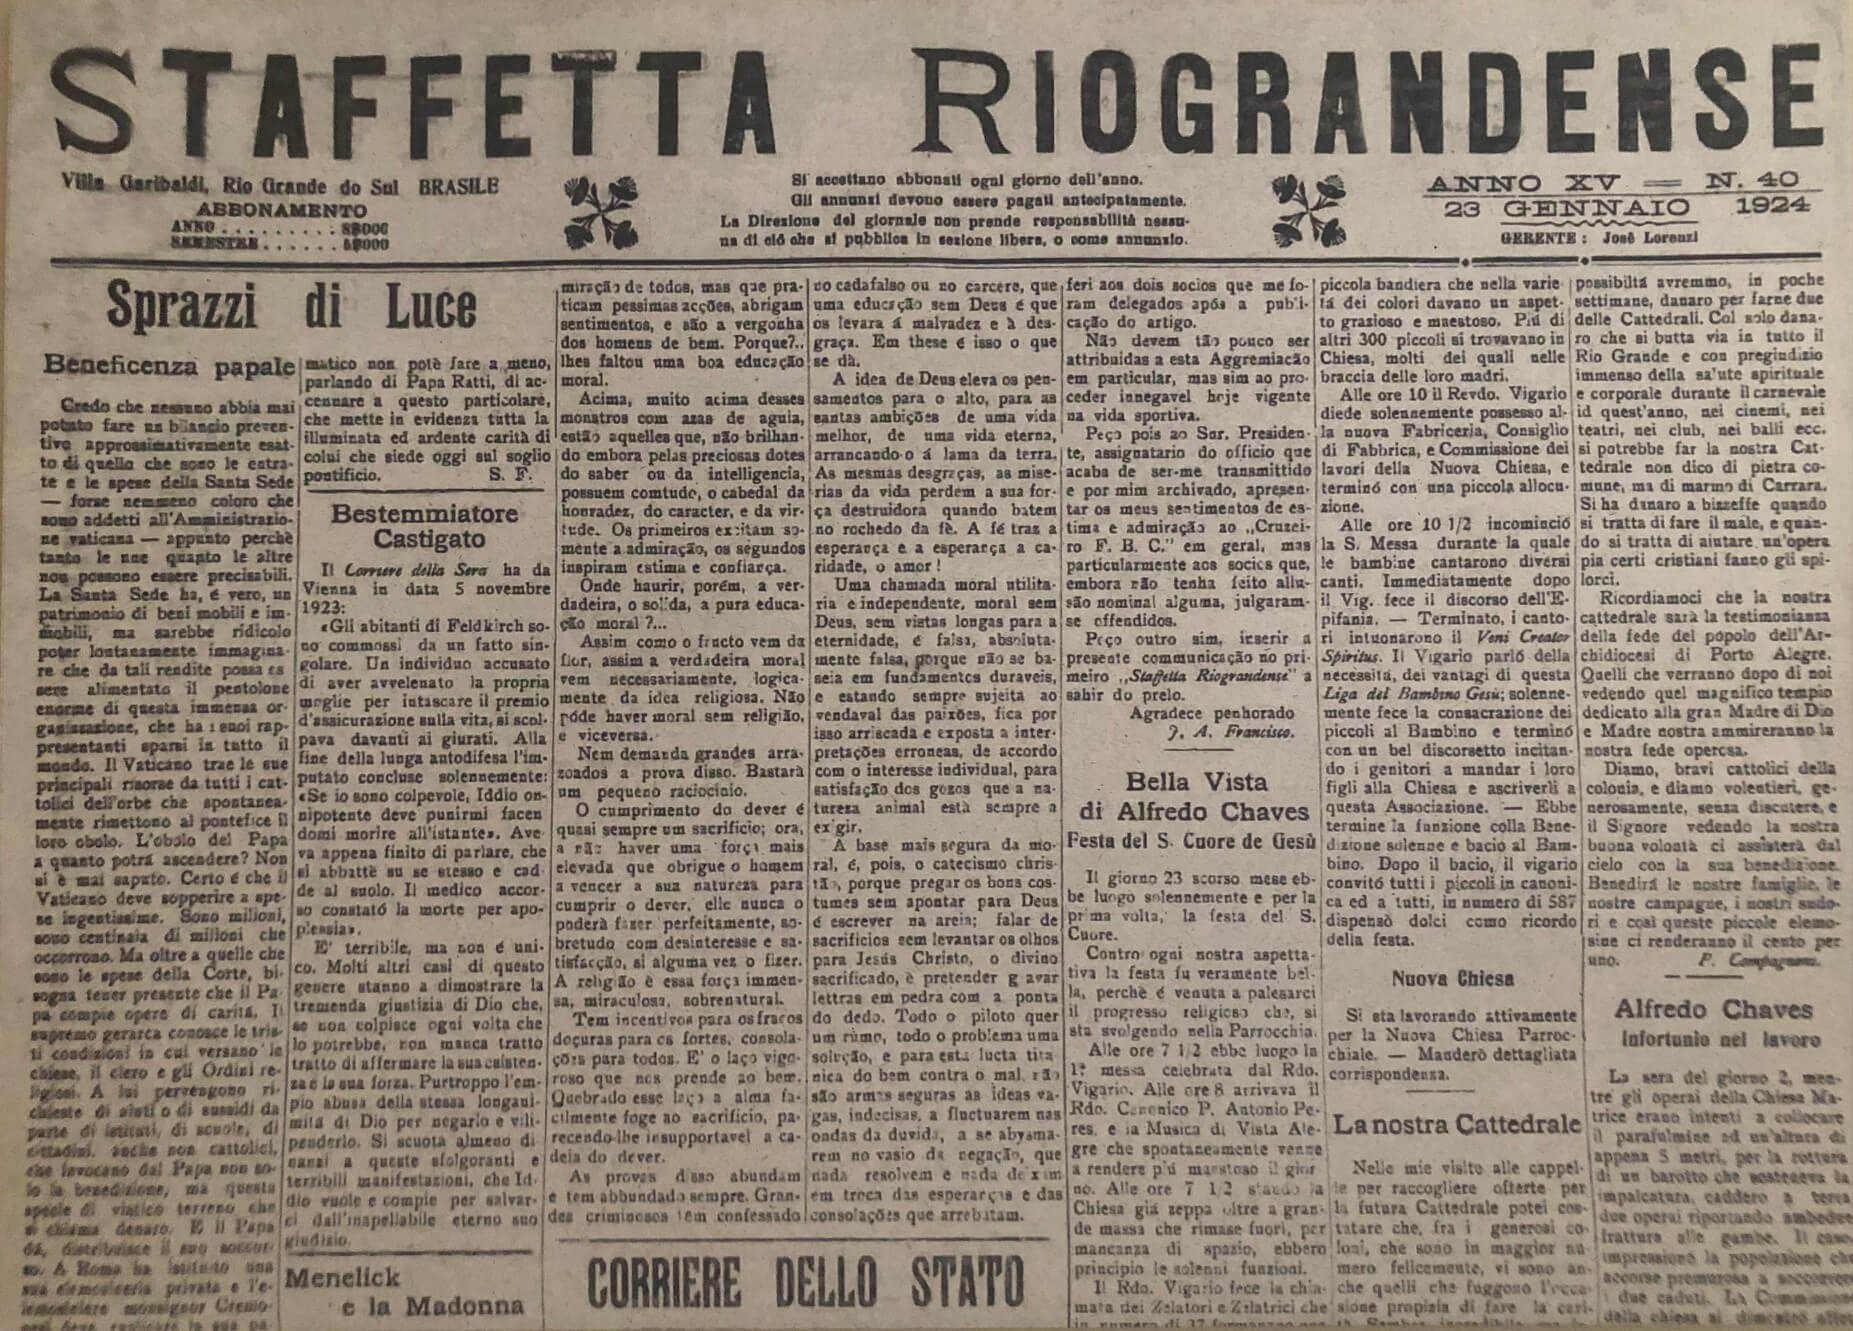 Jornal "Staffetta Riograndense”